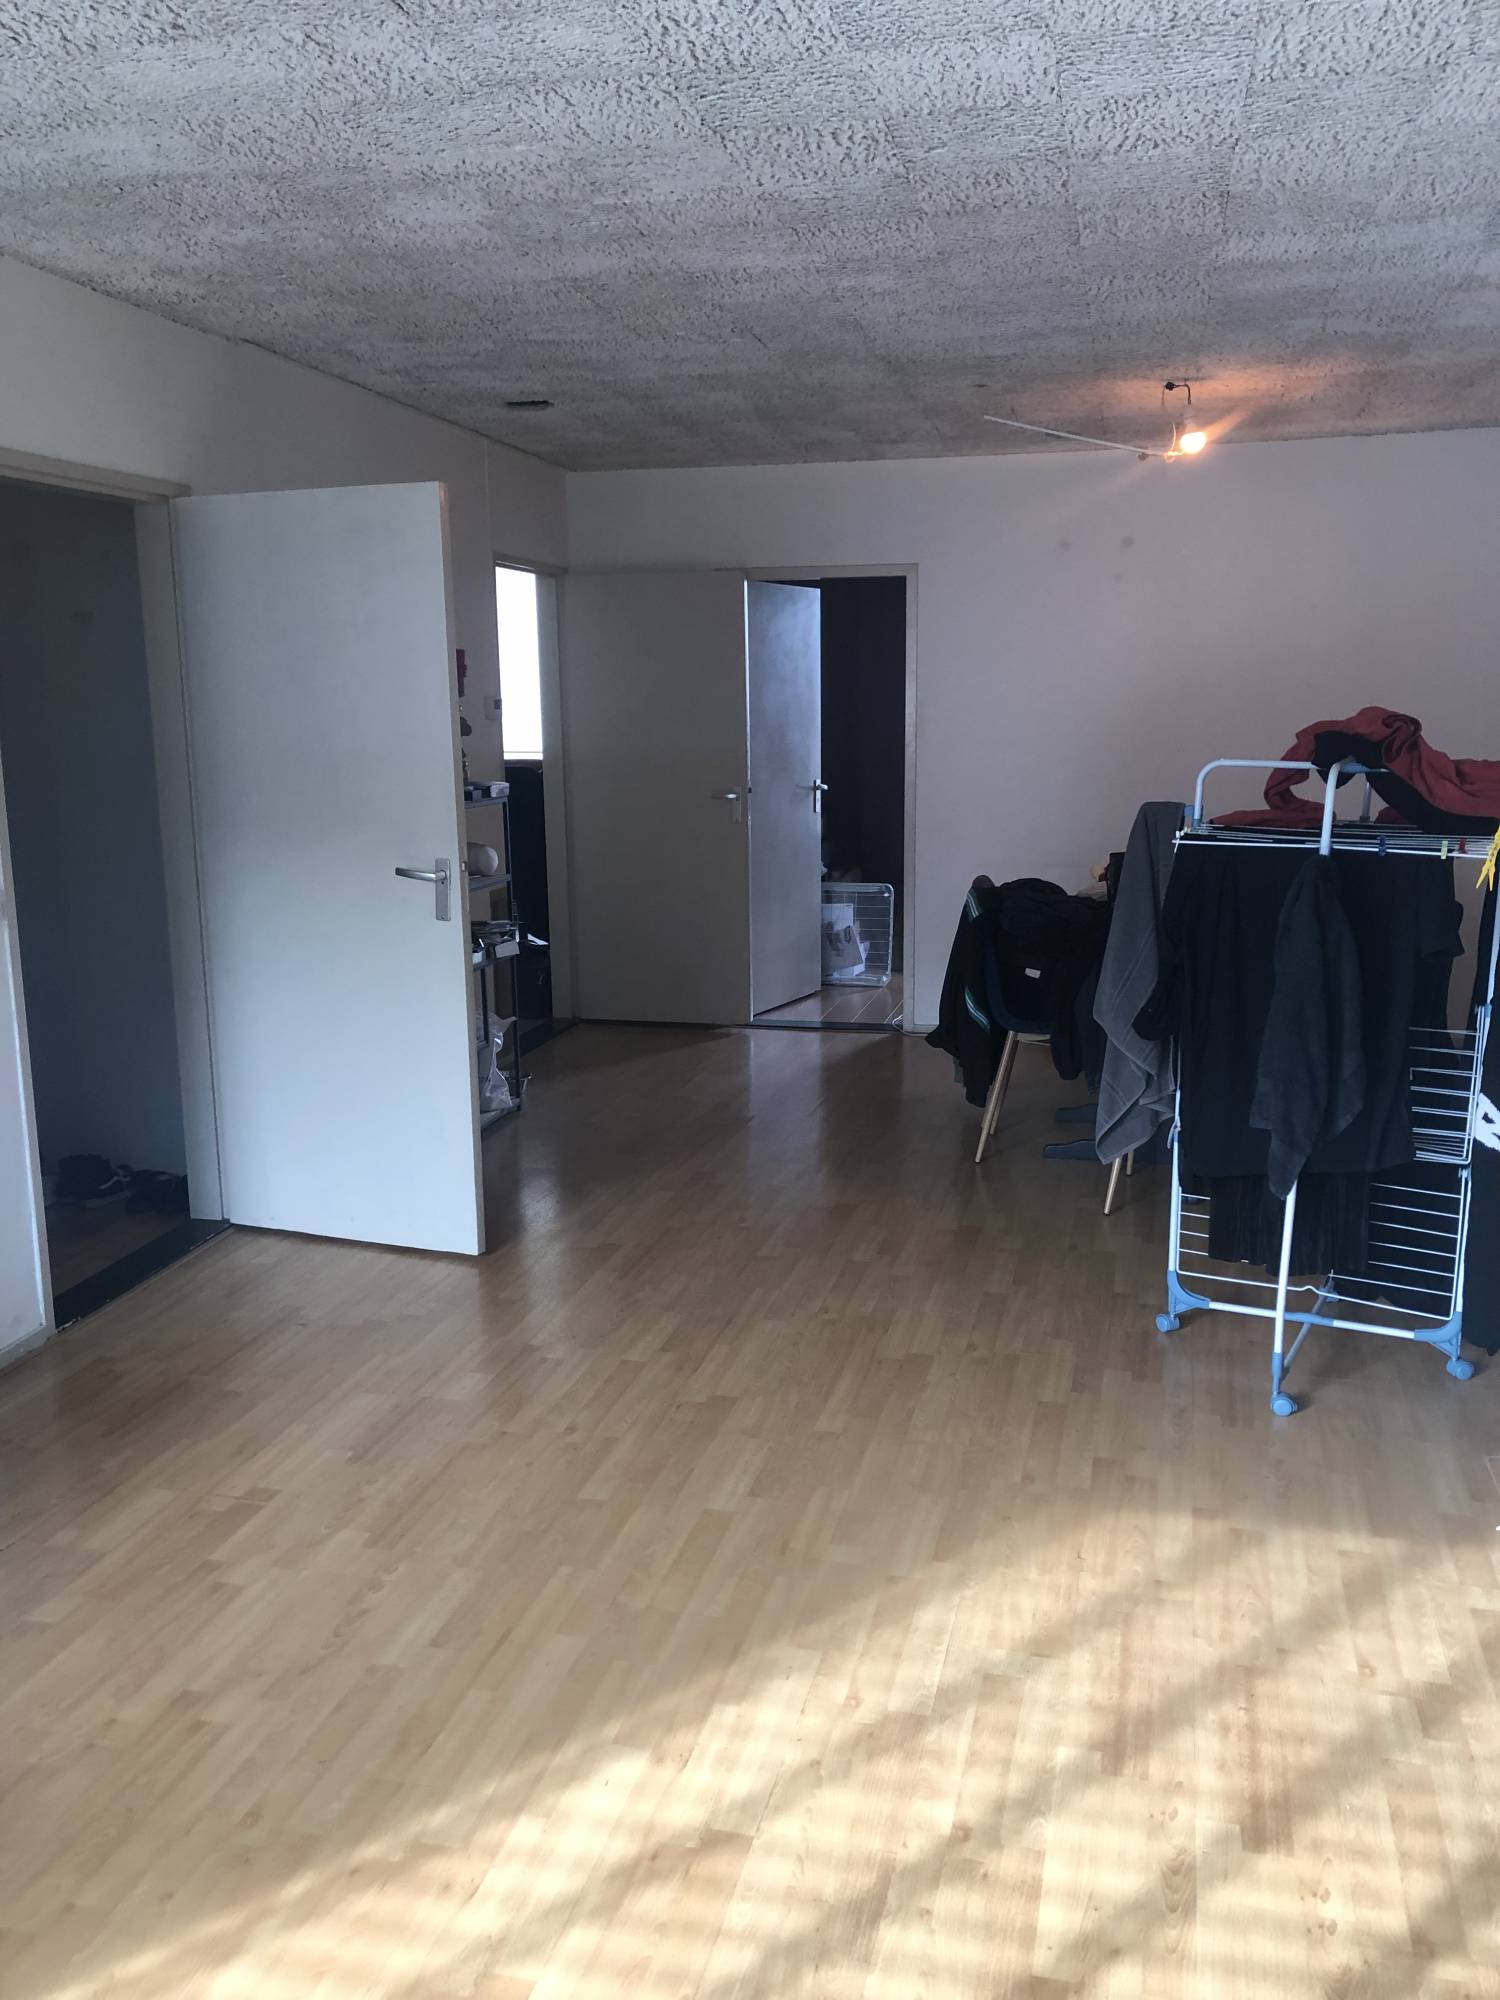 Bekijk foto 1/17 van apartment in Geldrop